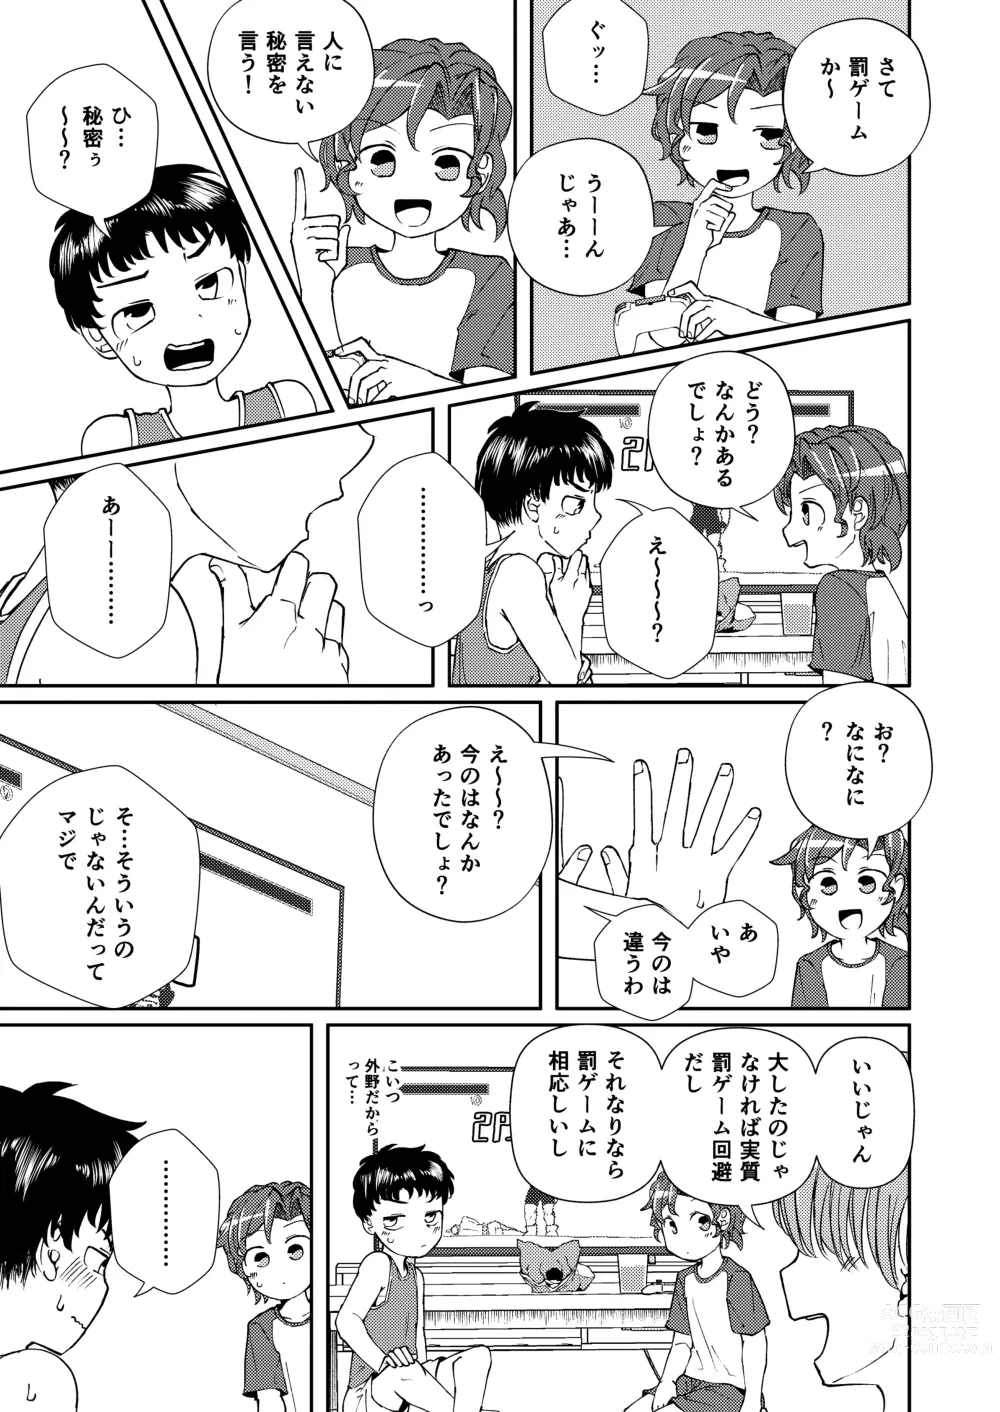 Page 7 of doujinshi Shoujiki Iu to,